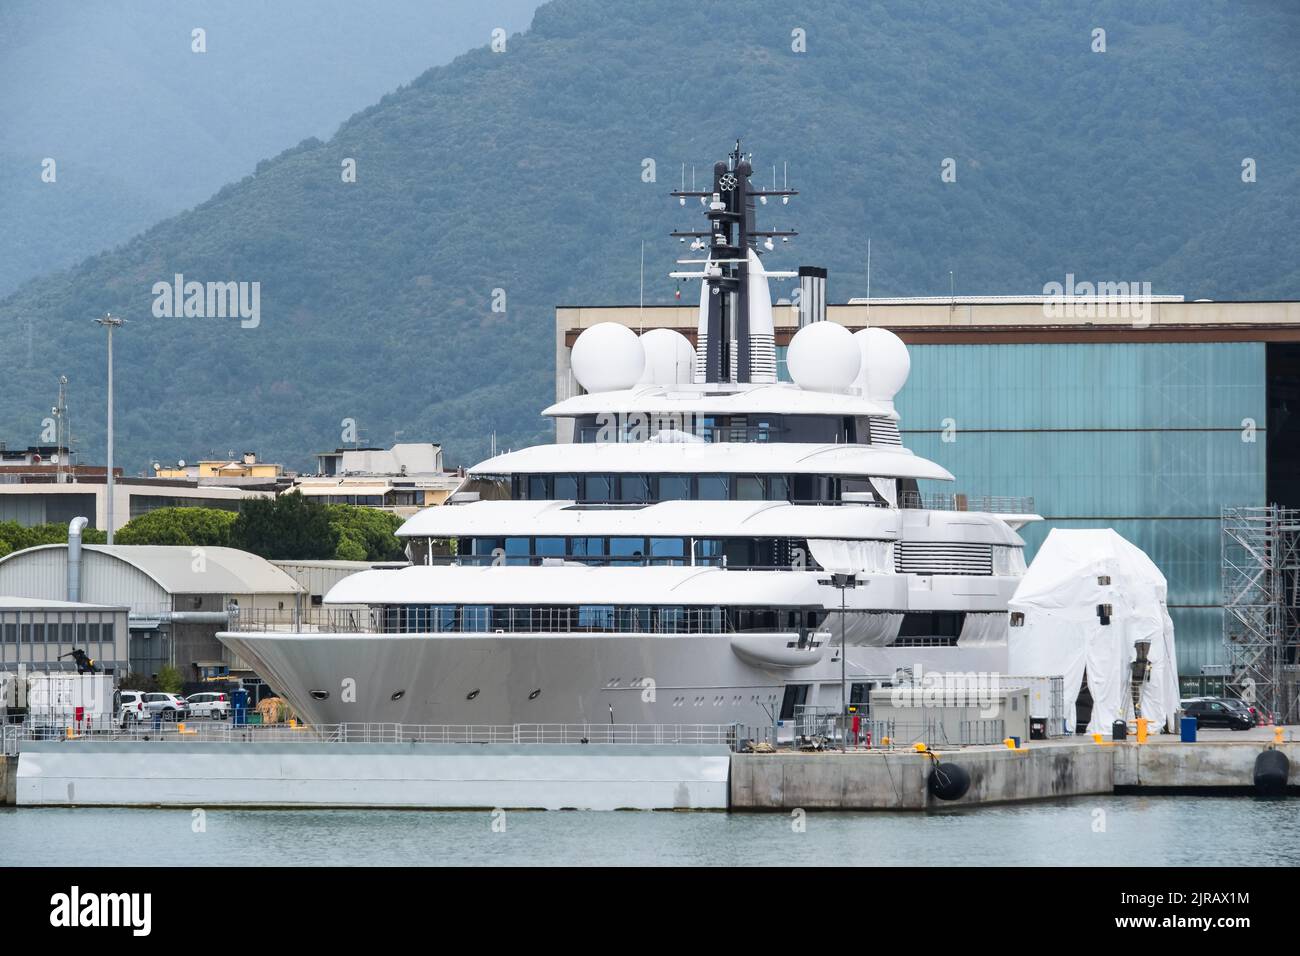 Superyacht o Presidente russo Vladimir Putin il superyacht Scheherazade di 459 metri attraccato al cantiere navale di Marina di Carrara, Italia, 19 AGOSTO 2022. Foto Stock